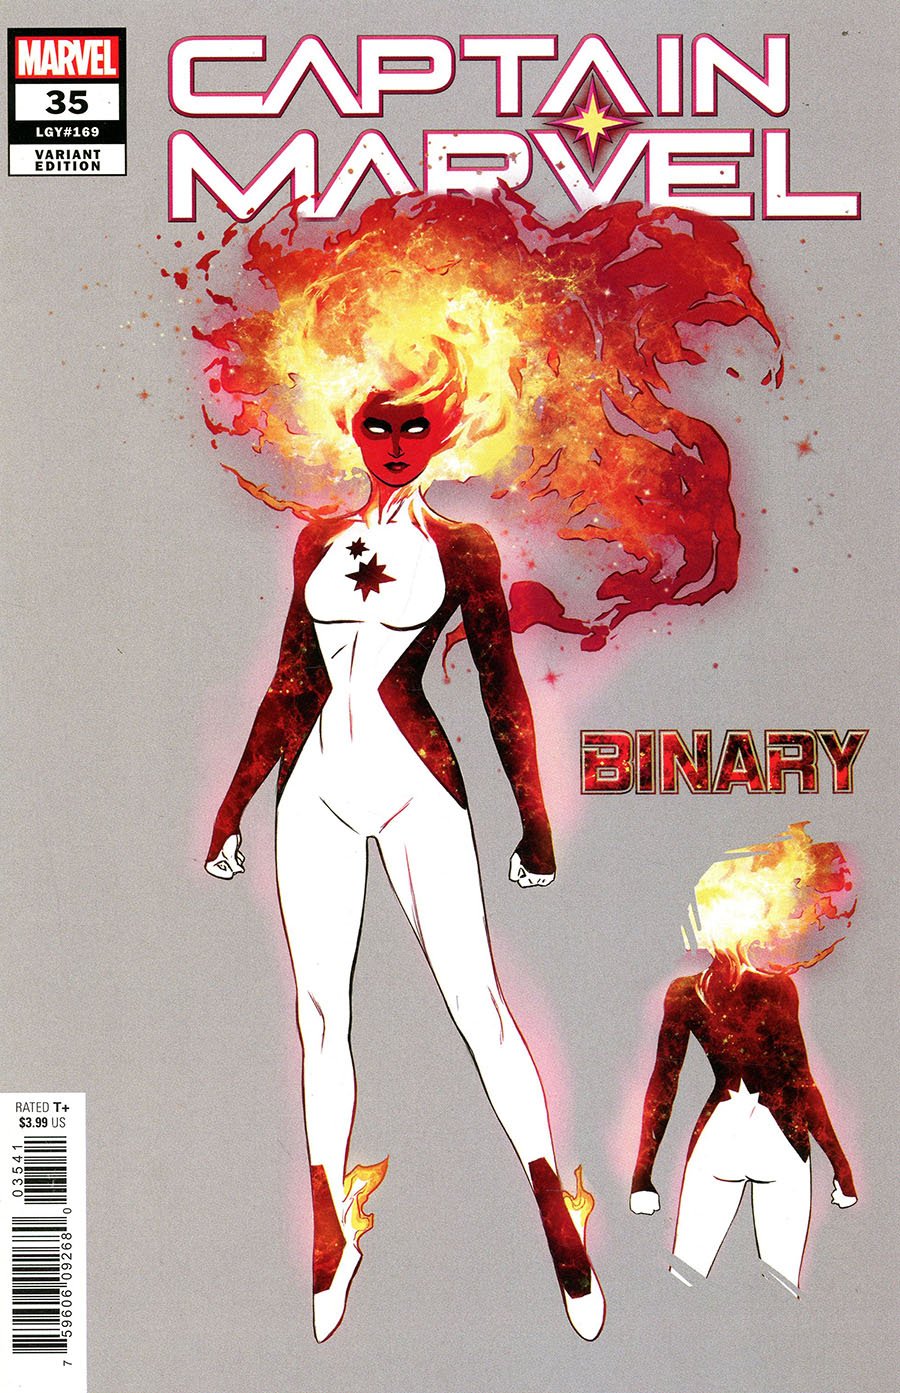 Variant cover di Captain Marvel #35 di Russell Dauterman, con la nuova Binary, uno degli eroi cosmici Marvel tornati in scena